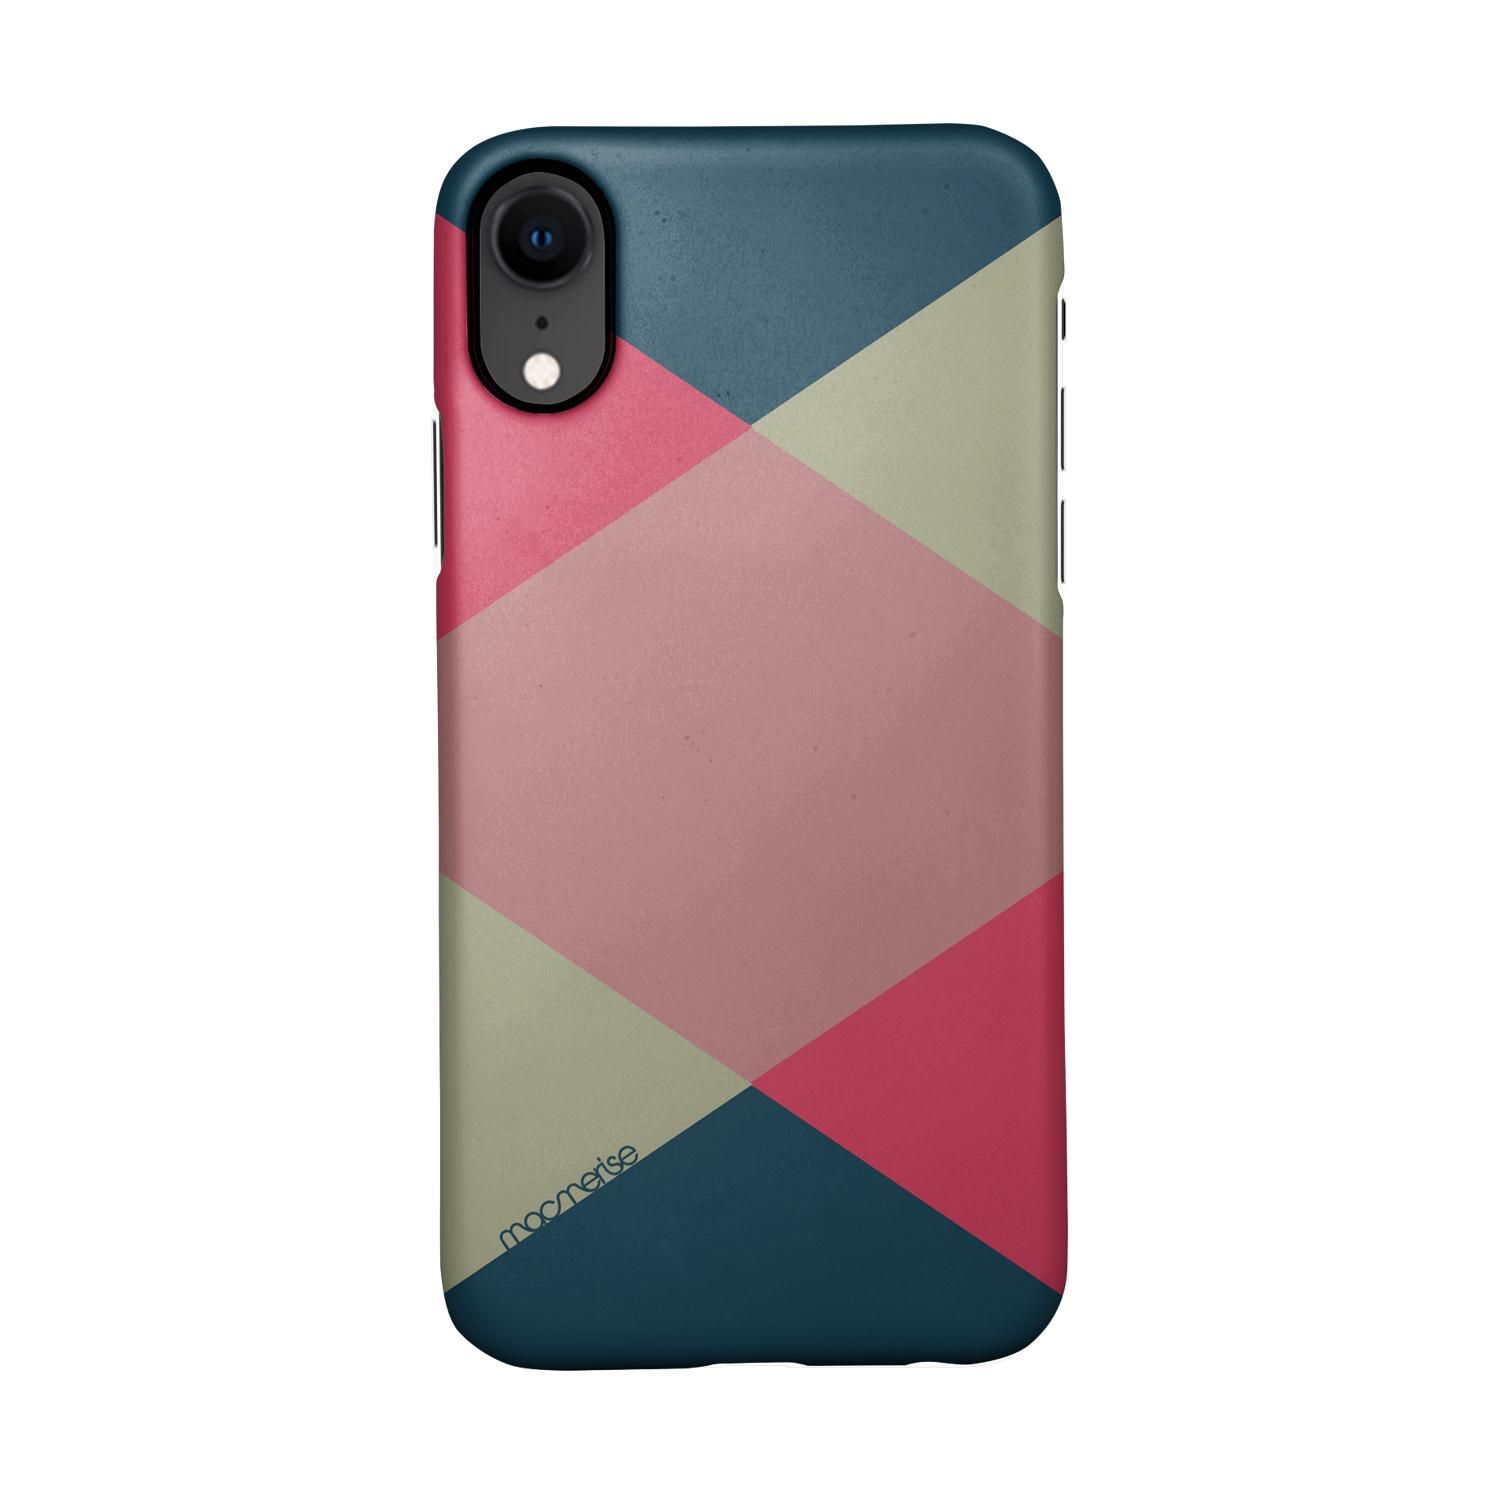 Criss Cross Tealpink - Sleek Phone Case for iPhone XR